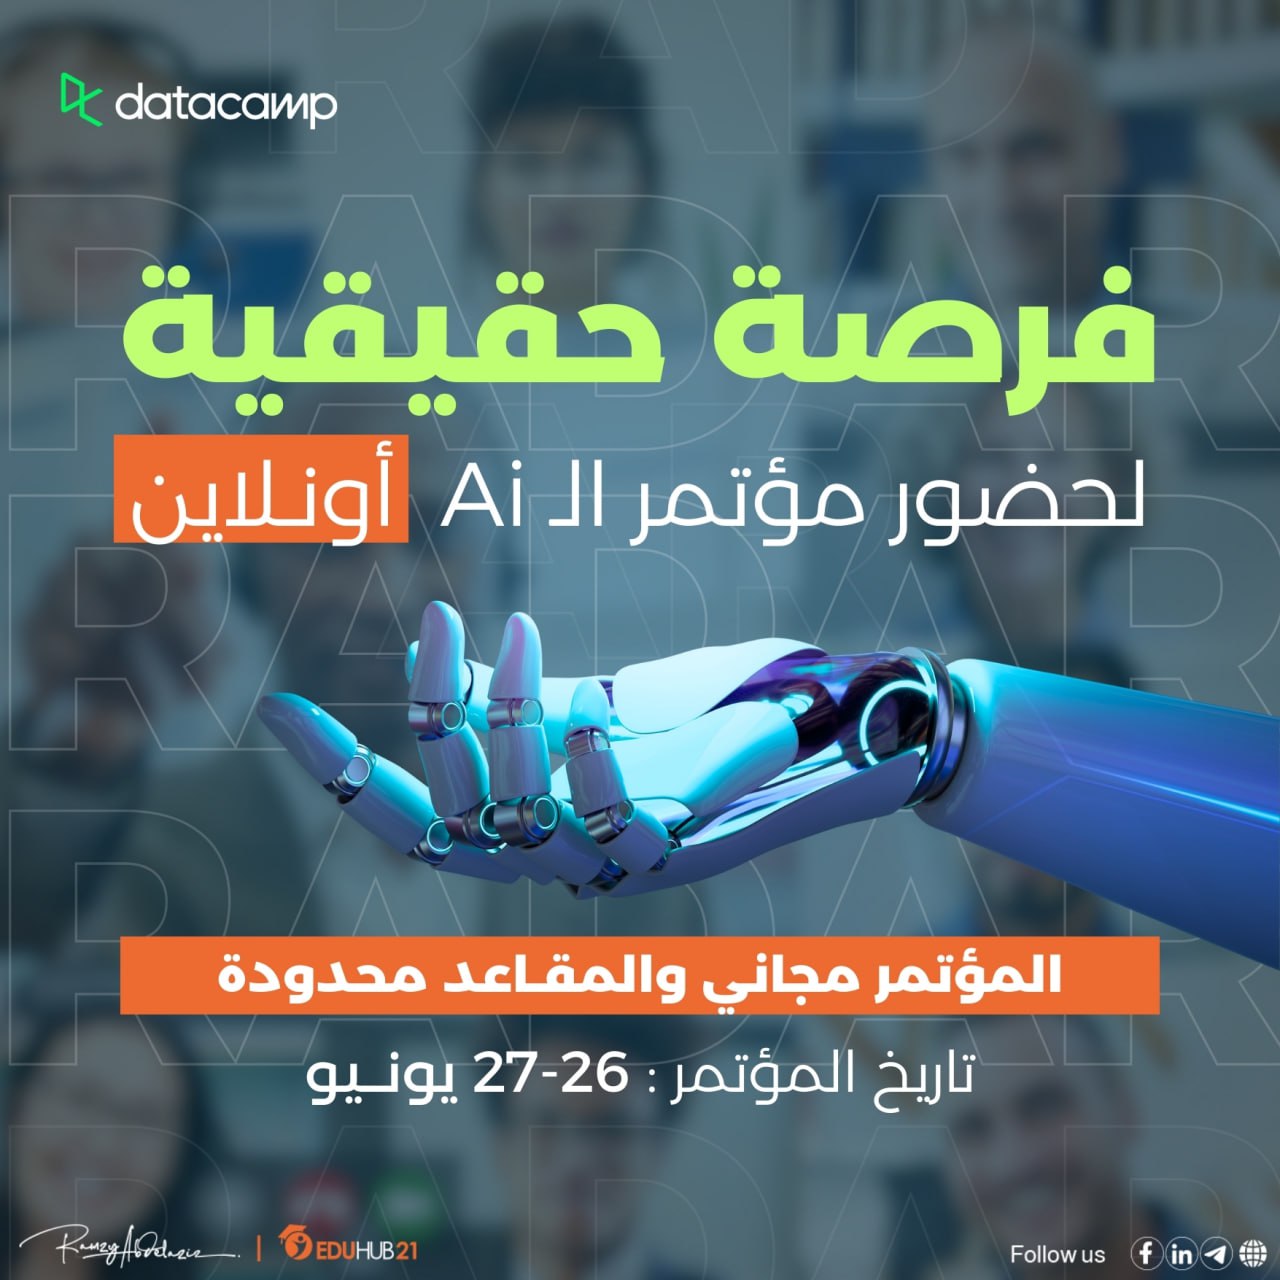 بررسی  100 روش هوش مصنوعی در «کنفرانس جهانی آنلاین رادار» در مصر